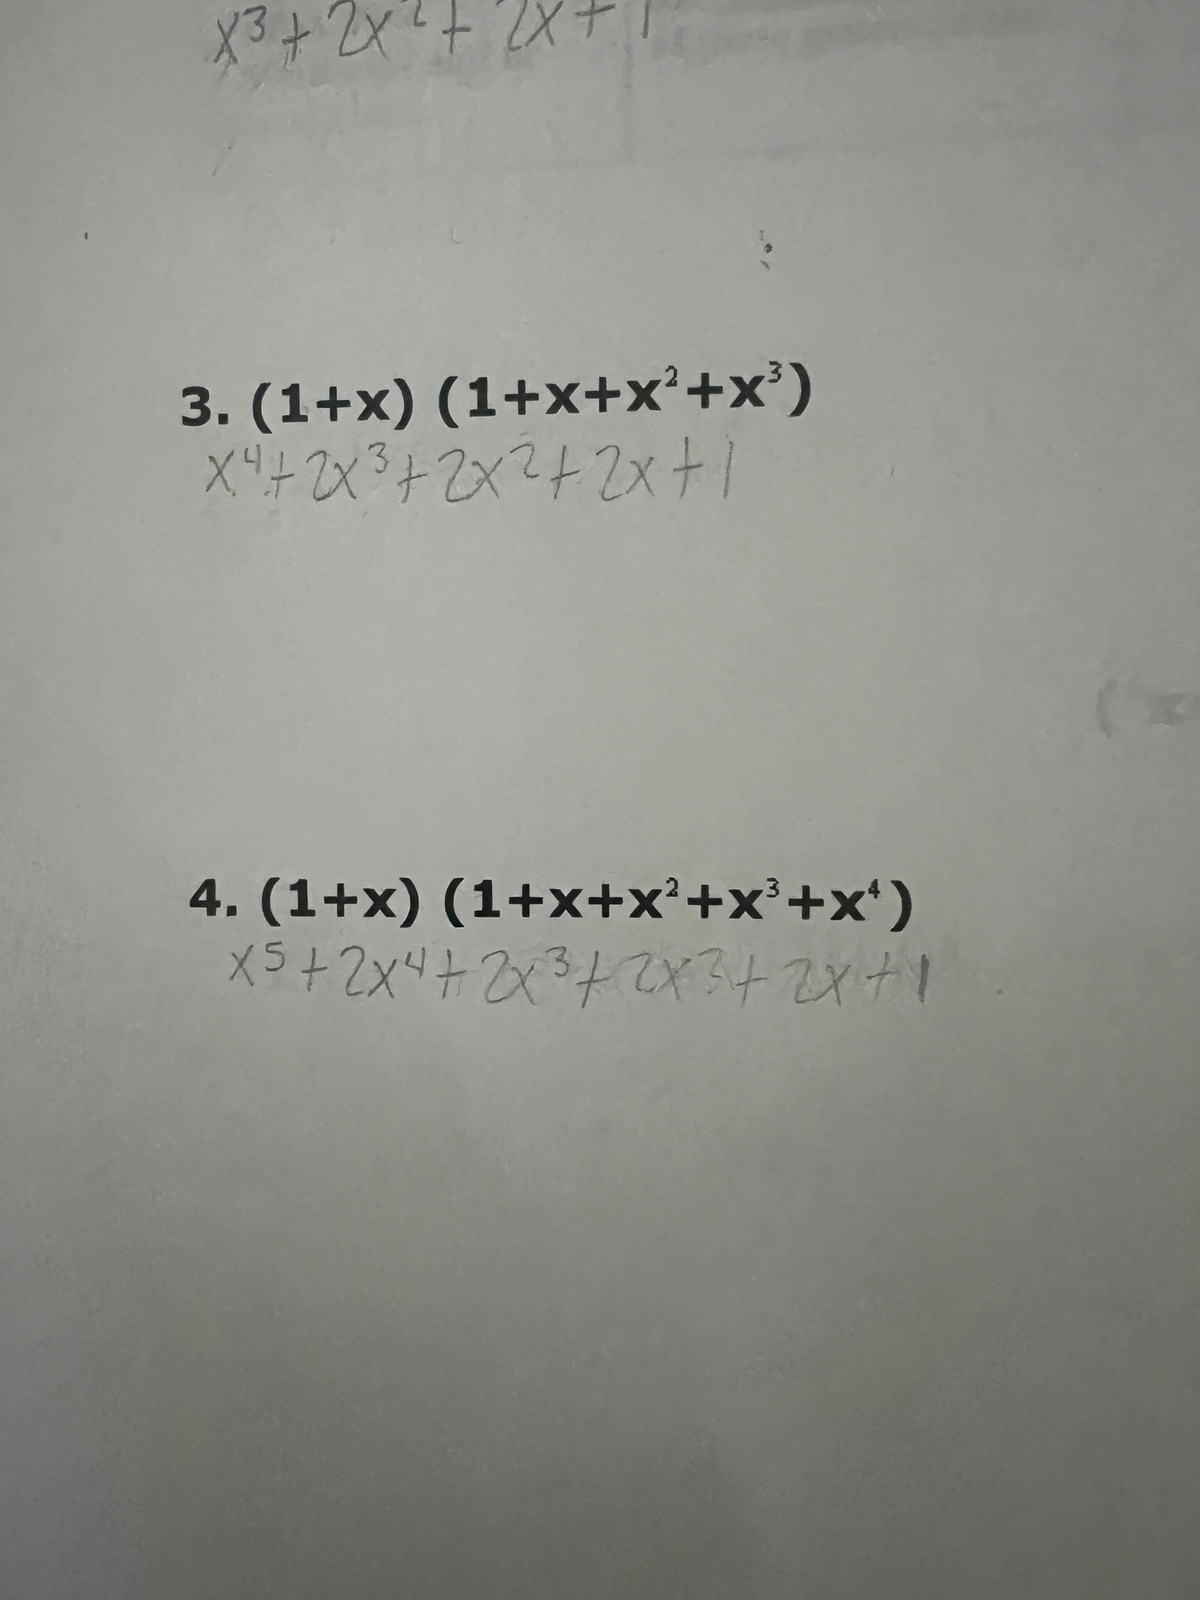 X3 + 2x² + 2x
3. (1+x)(1+x+x²+x³)
x² + 2x³ + 2x² + 2x + 1
3
4. (1+x) (1+x+x²+x³+x¹)
x5+2x4+2x²+2x3+2x+1